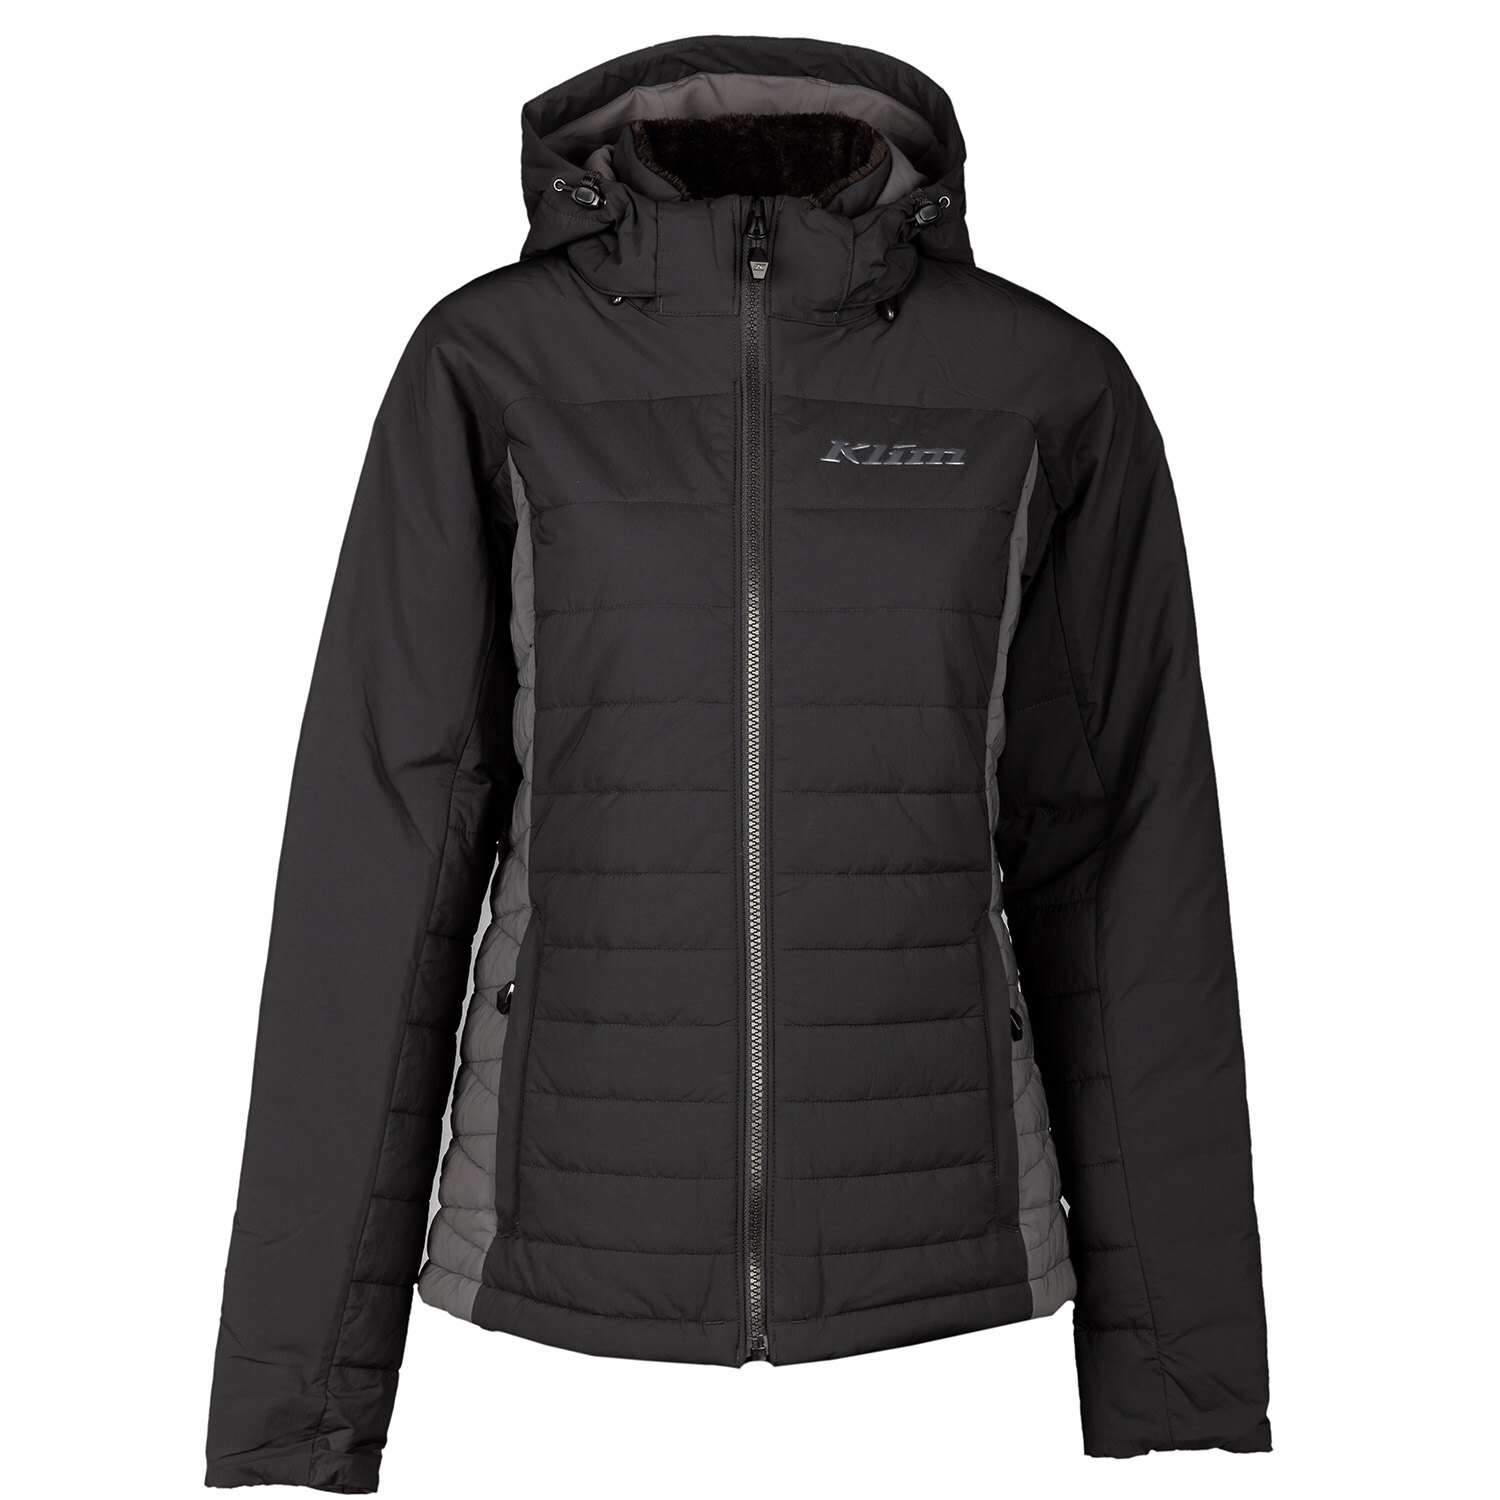 Waverly Jacket (Non Current) XS Black Asphalt